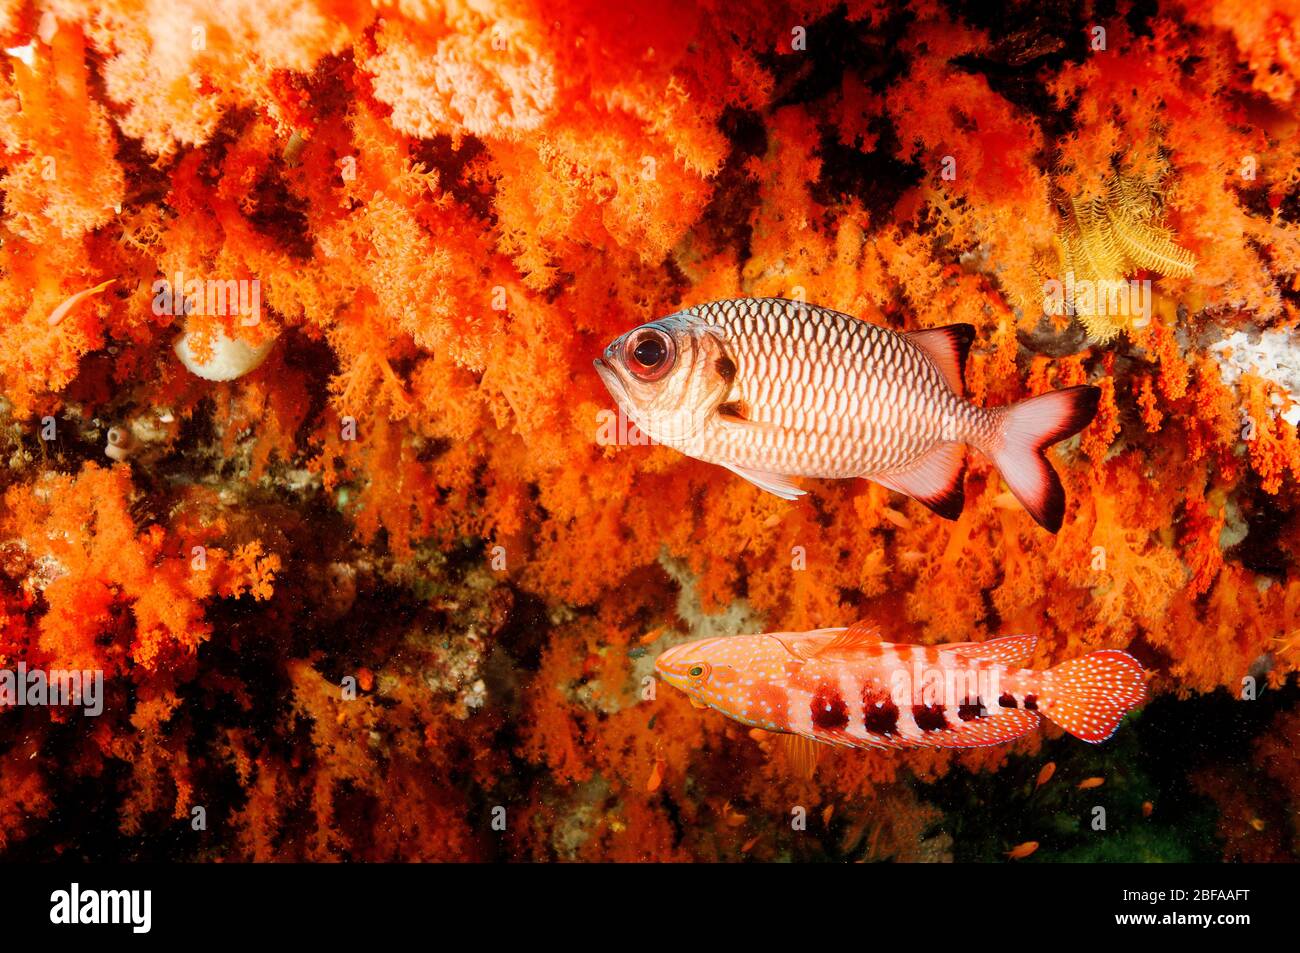 Coralli morbidi scenici con pesci soldato di bronzo, miripristis adusta, e sixspot grouper, Cephalopholis sexmaculata, Raja Ampat Indonesia. Foto Stock